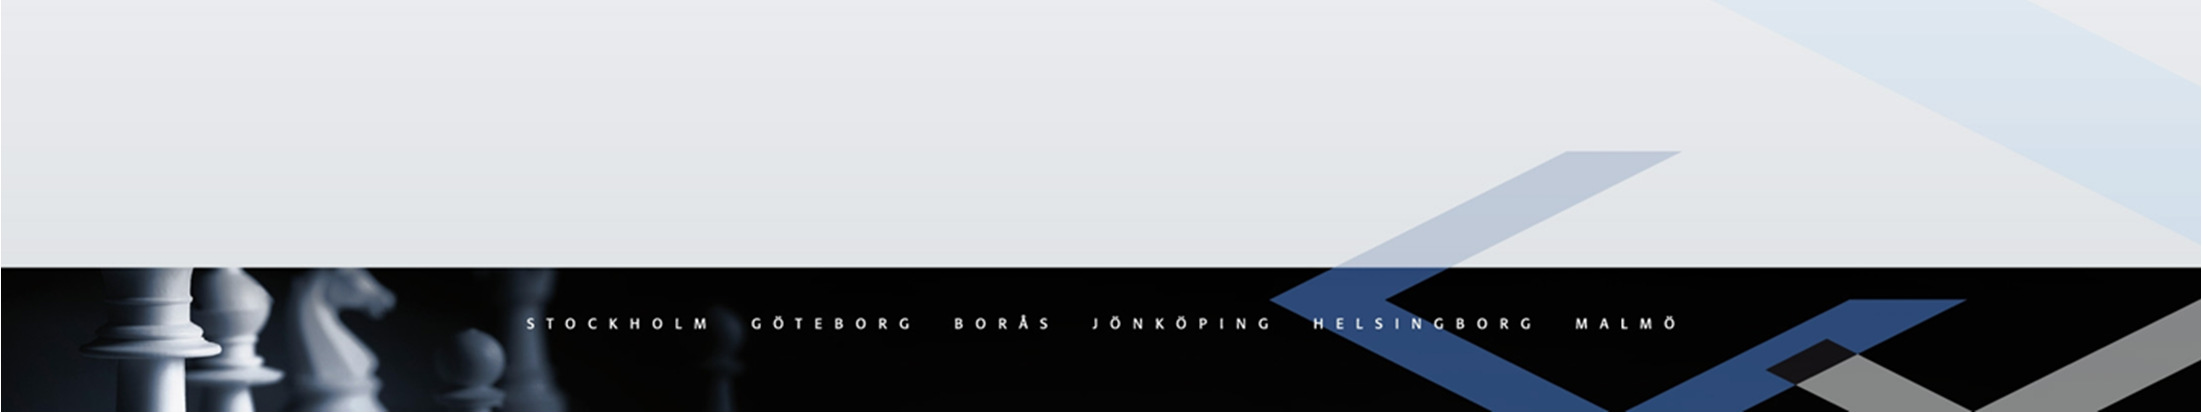 Upphandlingsrättsliga föreningen 11 september 2013 i Göteborg Anbudskarteller, ramavtal och konkurrens - En introduktion på 15 minuter FÖREDRAG BASERAT PÅ ARTIKEL I EUROPARÄTTSLIG TIDSKRIFT 4/2012